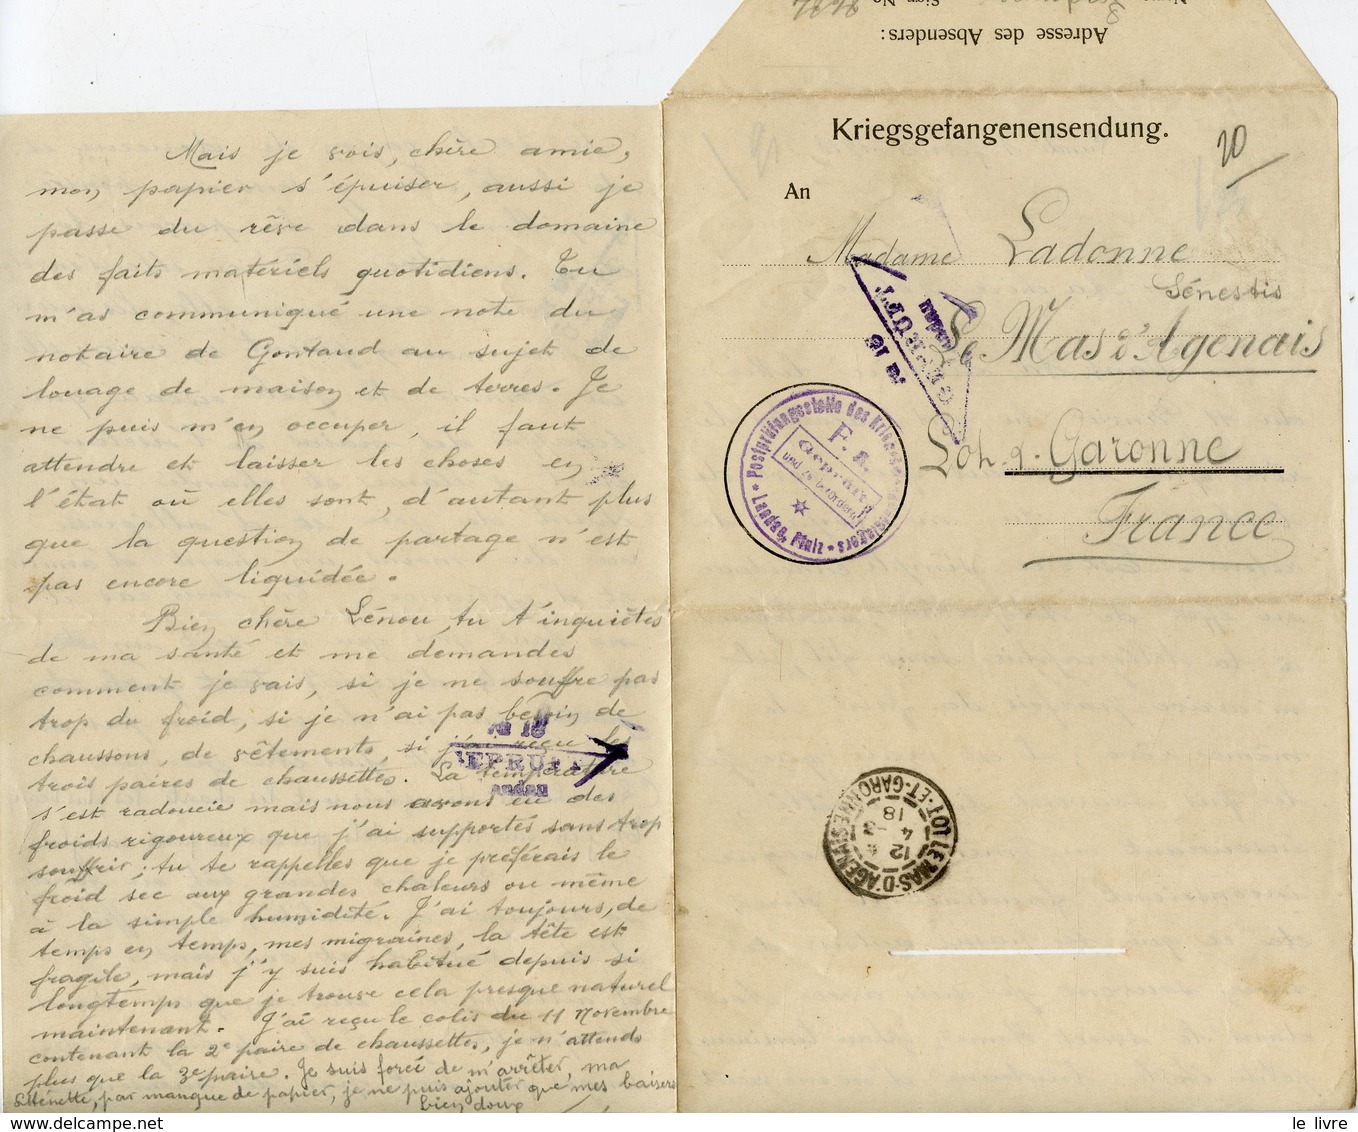 WW1 CAMP DE PRISONNIERS DE LANDAU 1917/18 LOT DOCUMENTS KRIEGSGEFANGENENSENDUNG PRISONNIER A SA FAMILLE LE MAS D'AGENAIS - Documentos